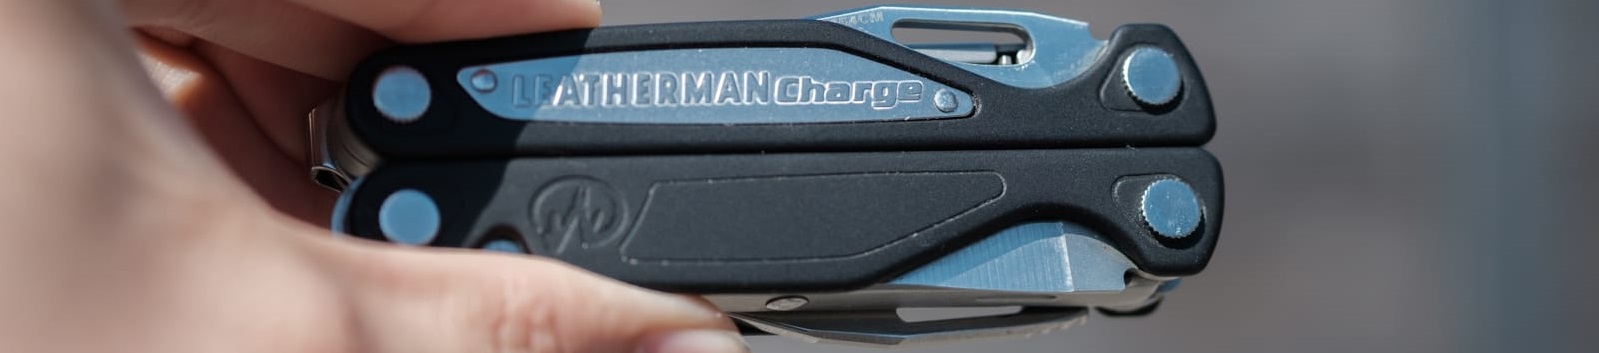 Мультиінструмент Leatherman Charge ALX 830714 з чорними алюмінієвими пластинами на рукоятках